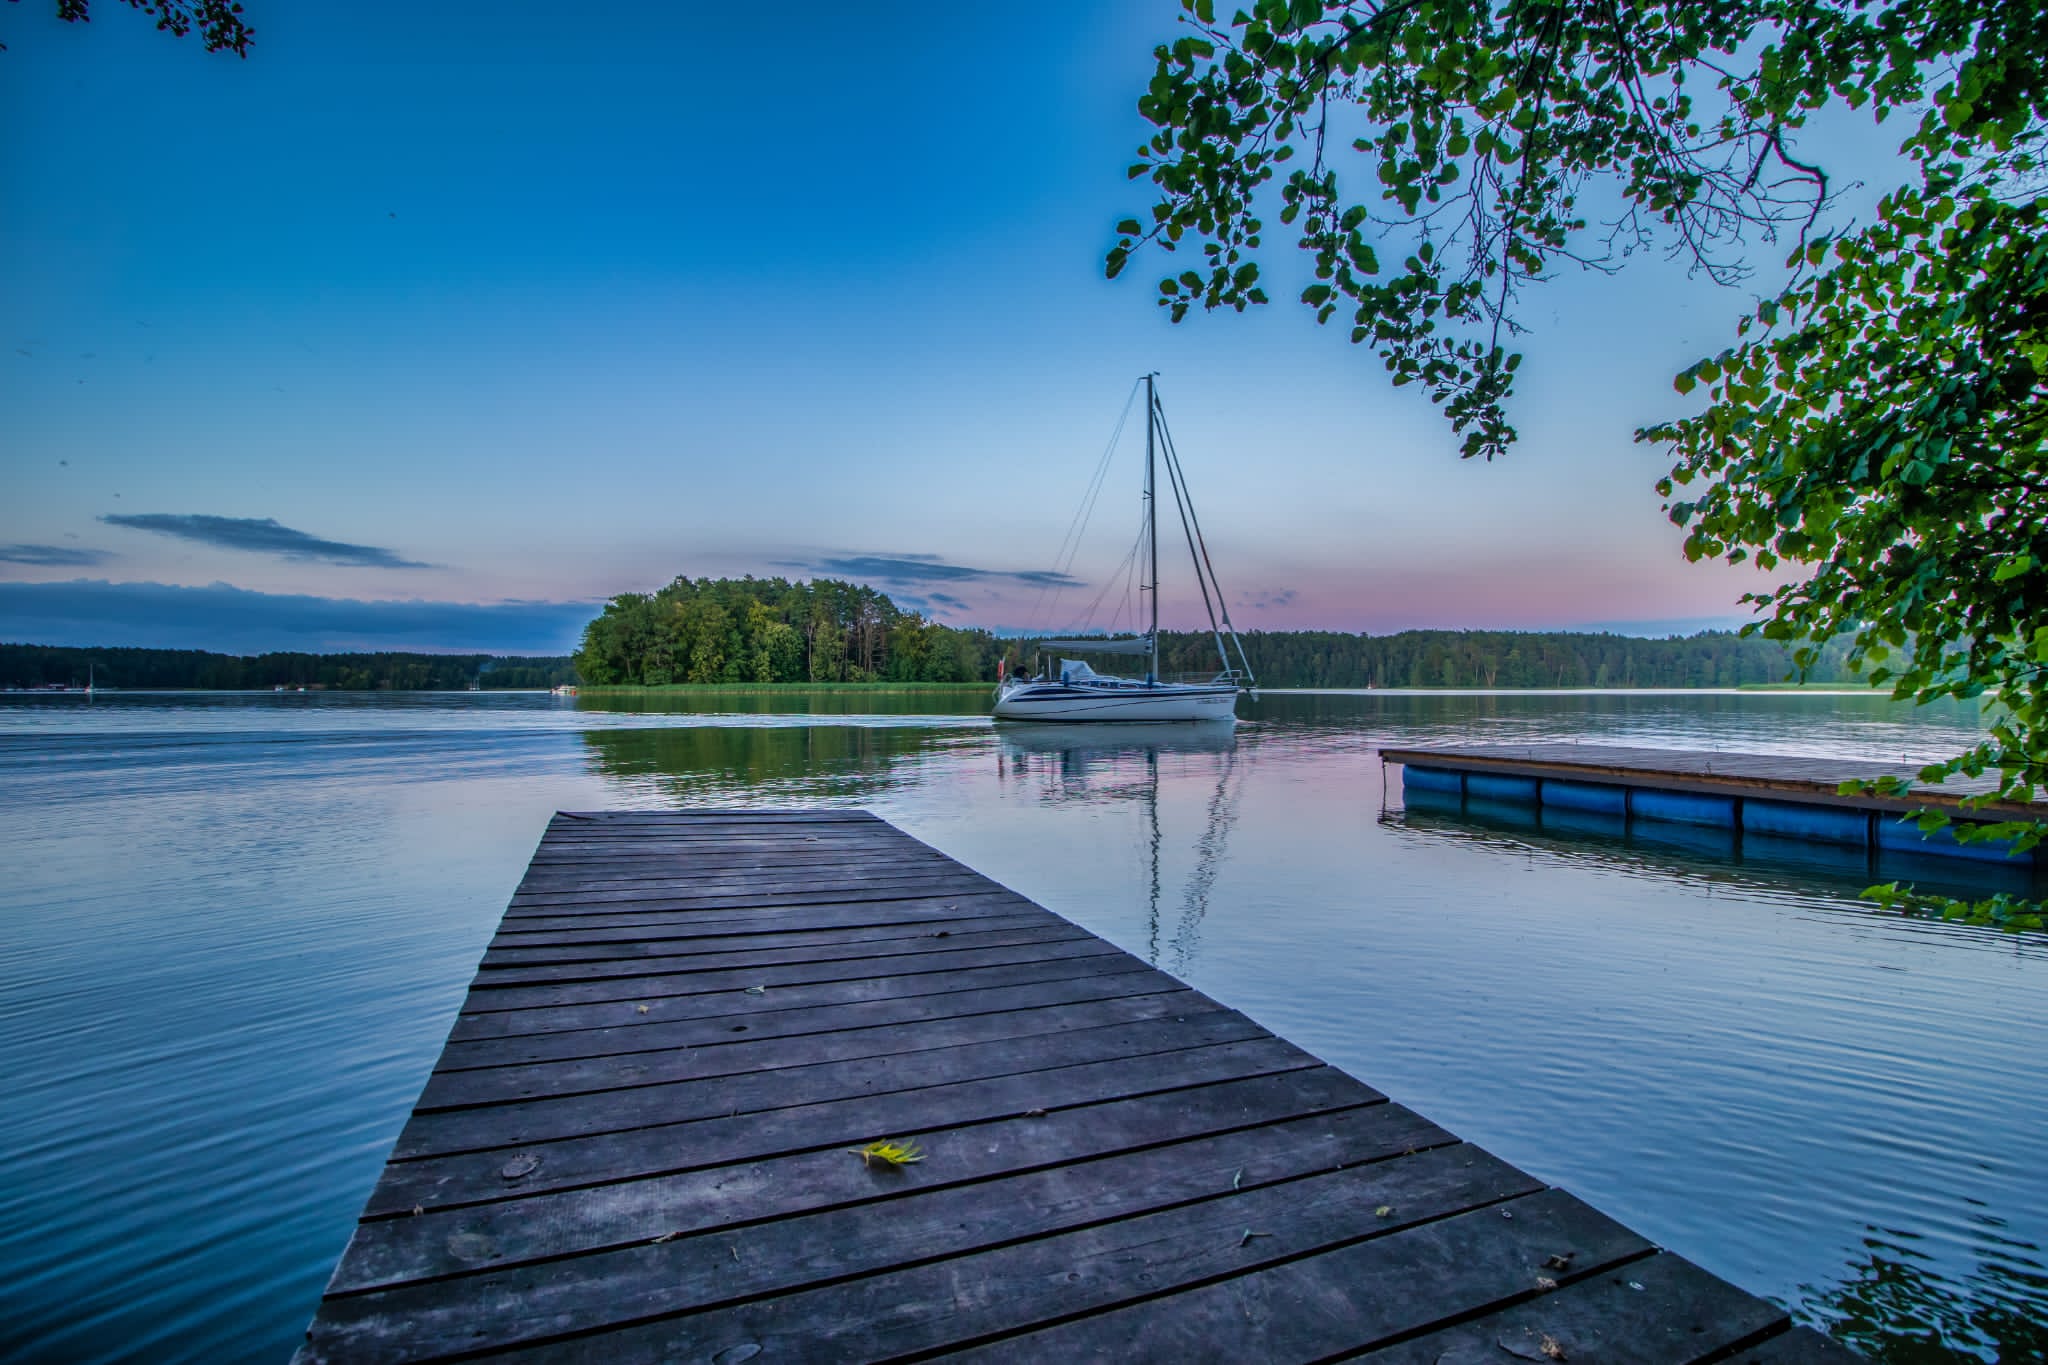 Miejsce organizacji wydarzenia - Jezioro Nidzkie. Fot. Marcin Czaplicki